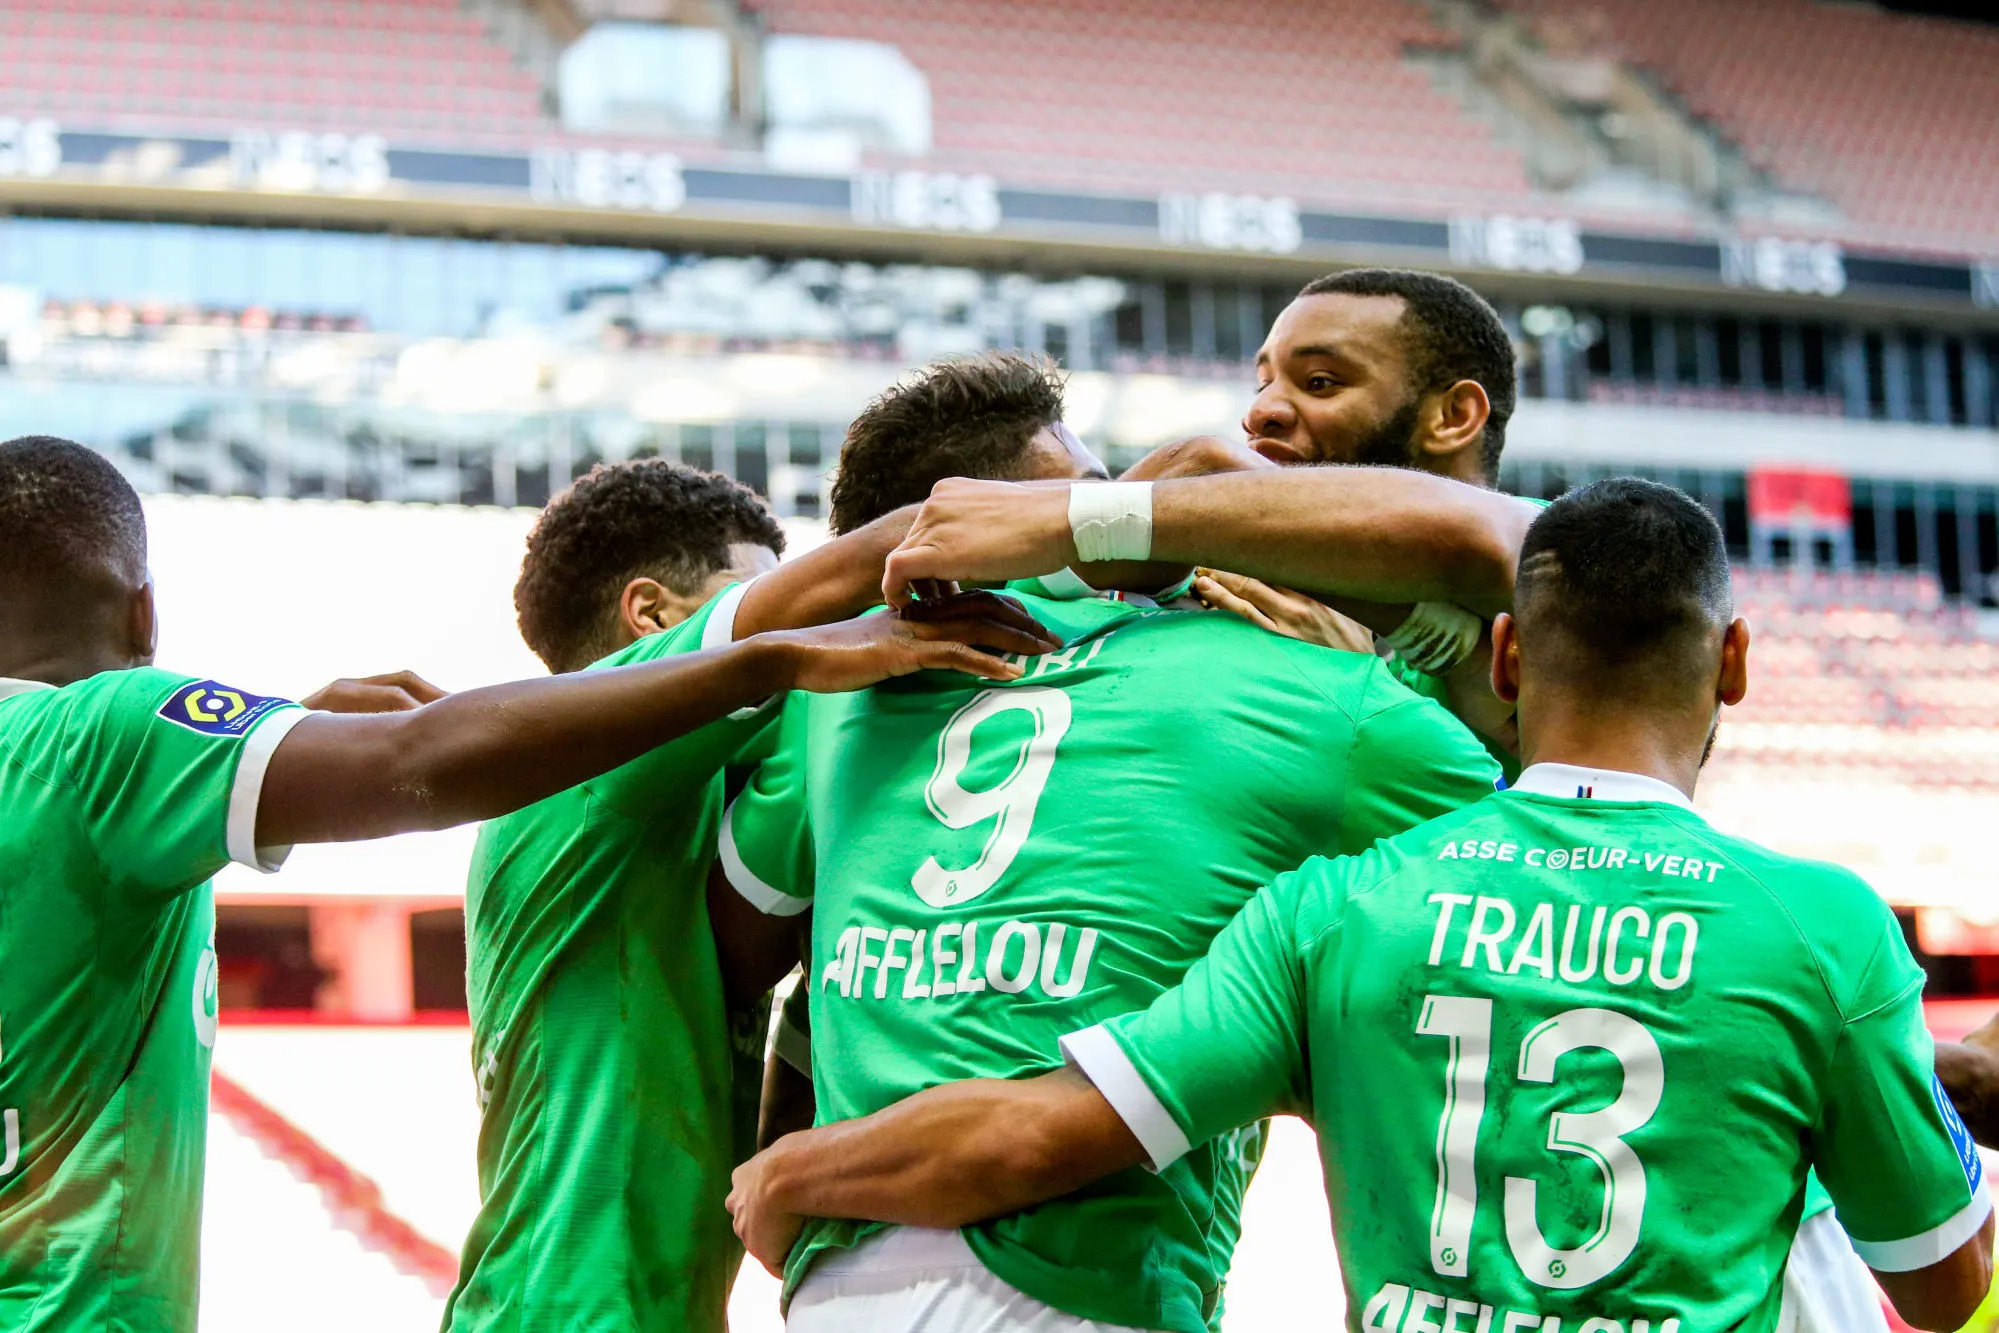 Pronostic Saint-Etienne Nantes : Analyse, cotes et prono du match de Ligue 1